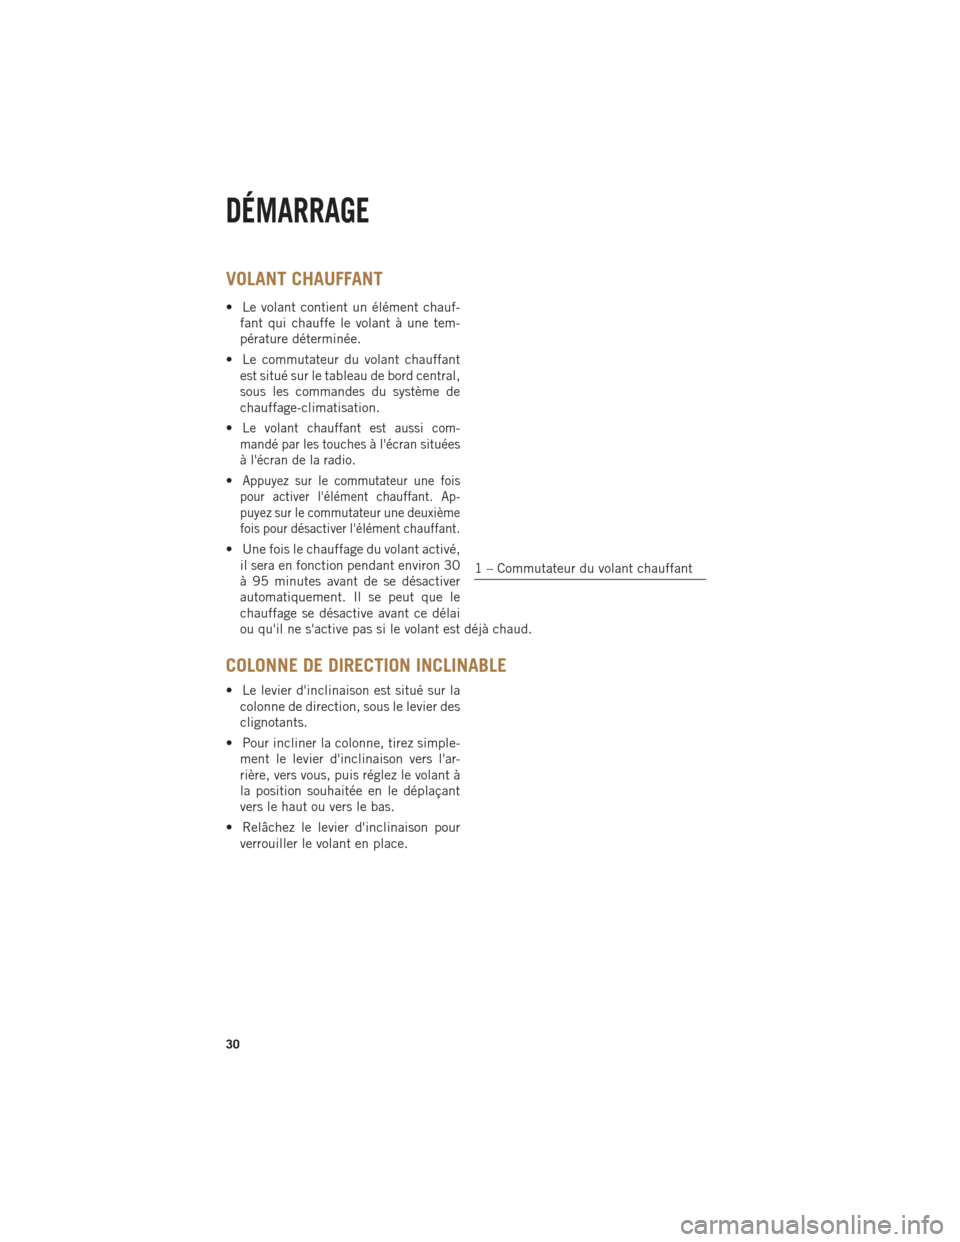 Ram 1500 2014  Guide dutilisateur (in French) VOLANT CHAUFFANT
• Le volant contient un élément chauf-fant qui chauffe le volant à une tem-
pérature déterminée.
• Le commutateur du volant chauffant est situé sur le tableau de bord centr